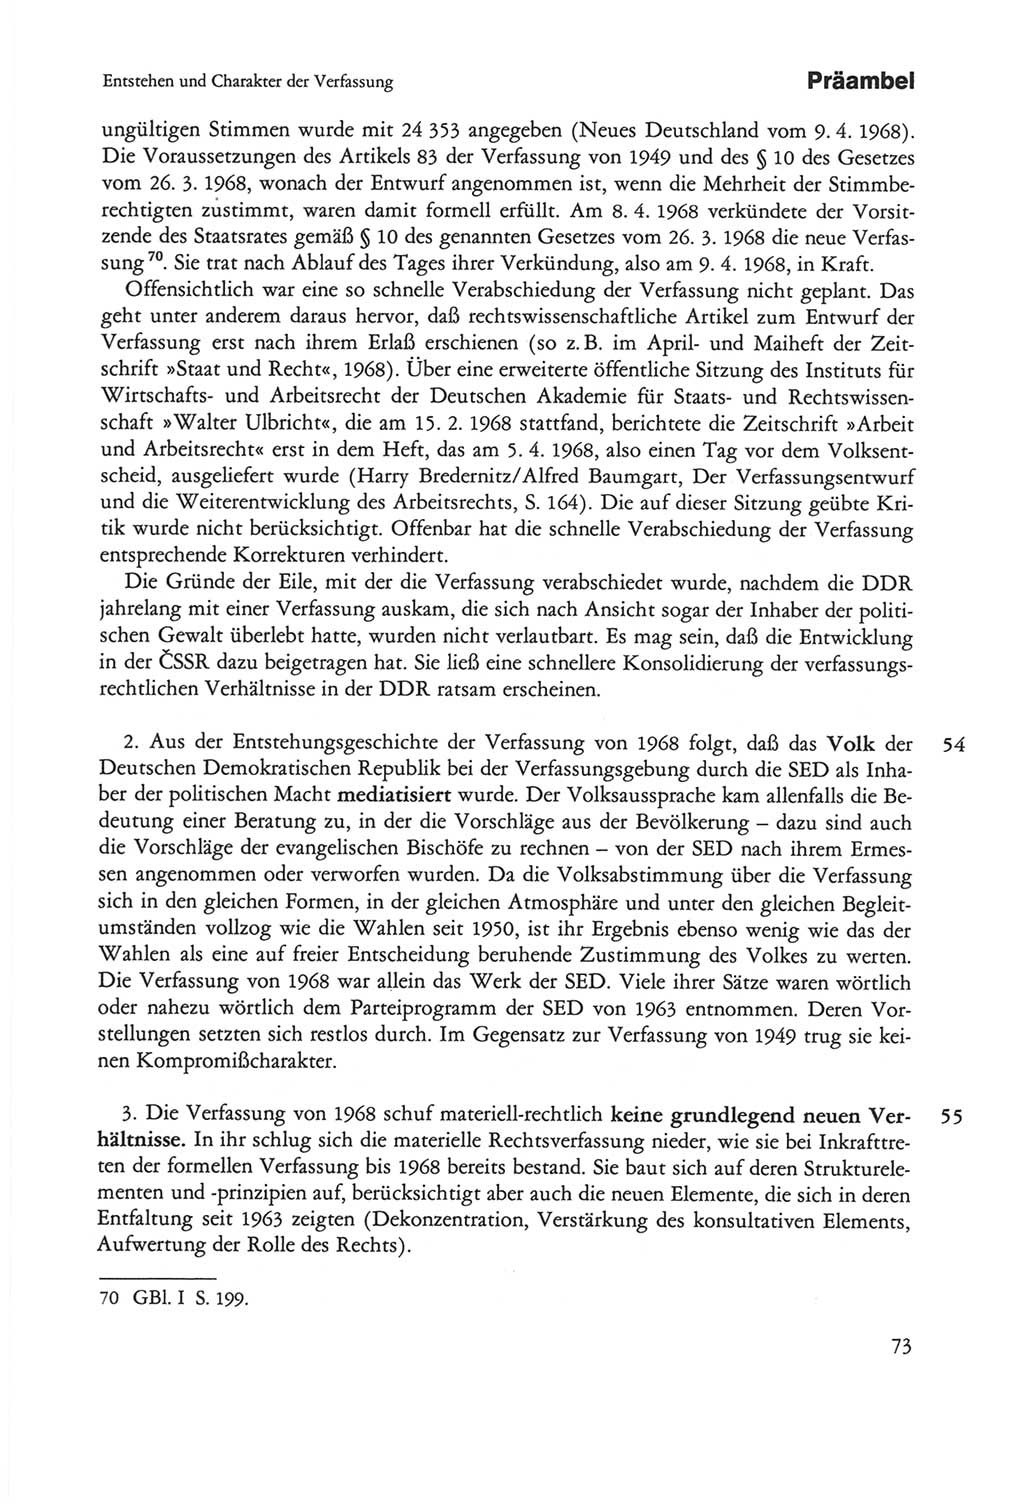 Die sozialistische Verfassung der Deutschen Demokratischen Republik (DDR), Kommentar mit einem Nachtrag 1997, Seite 73 (Soz. Verf. DDR Komm. Nachtr. 1997, S. 73)